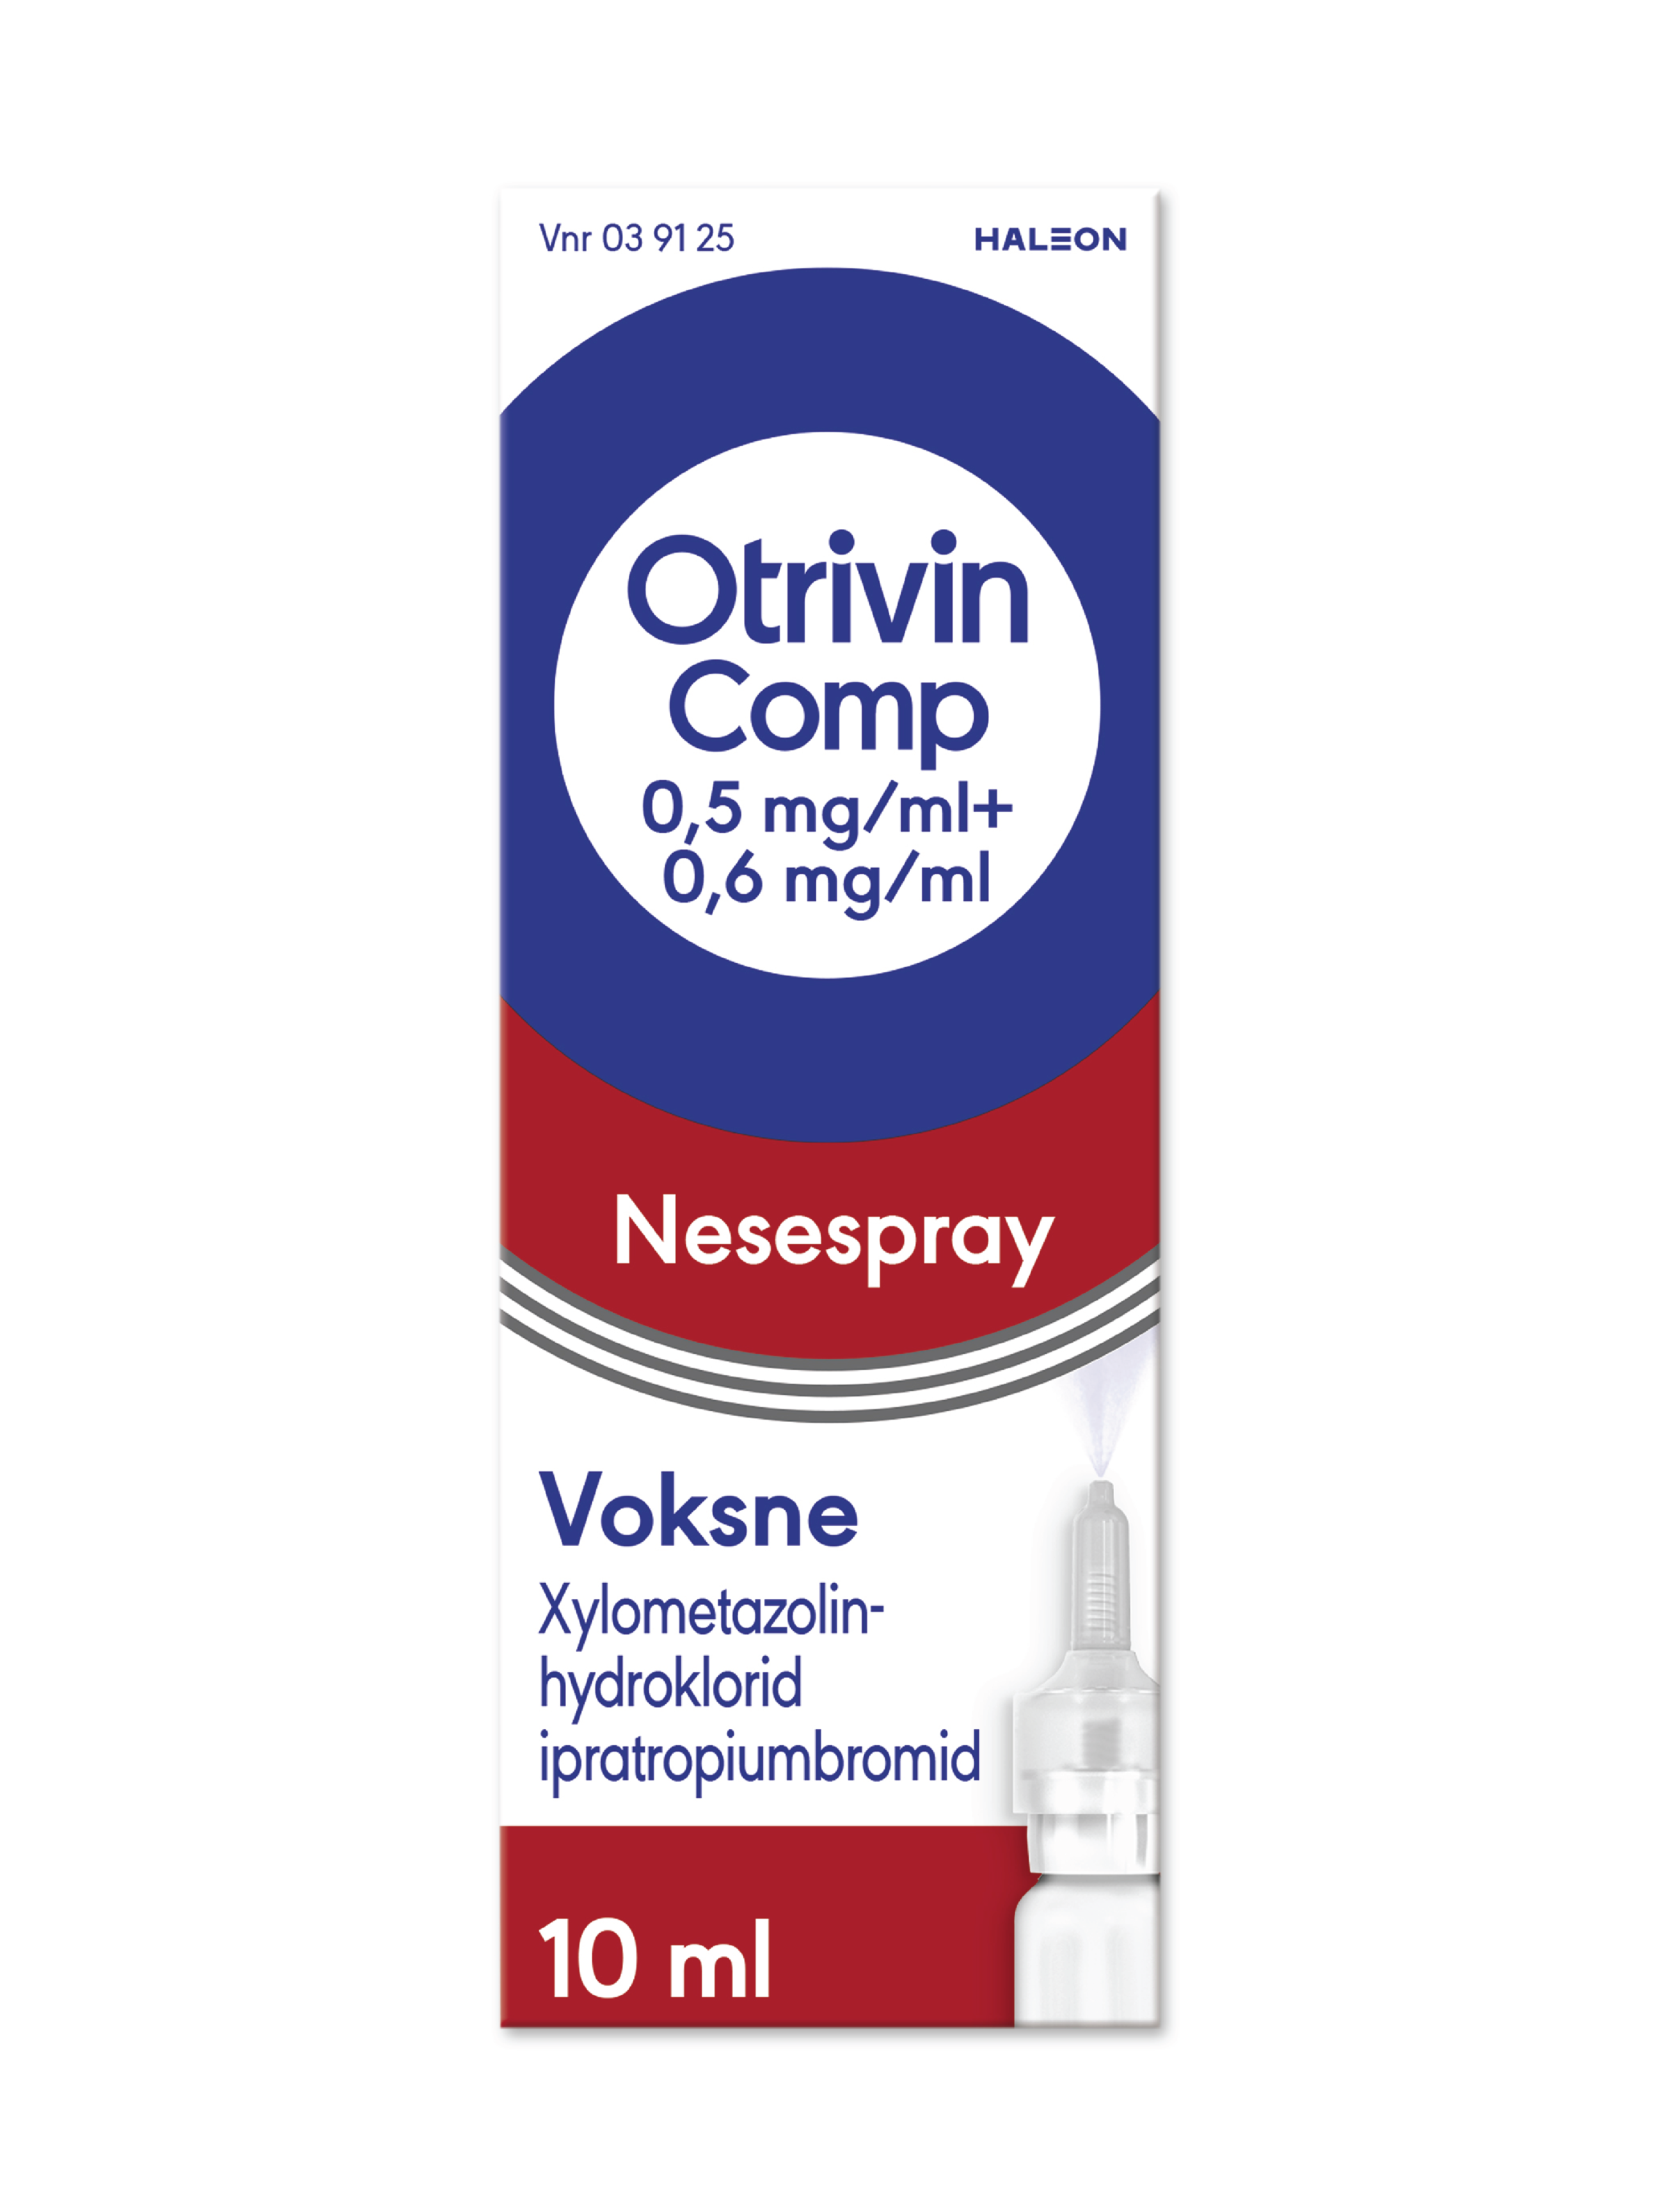 Otrivin Comp Nesespray, 0,5 mg/ml + 0,6 mg/ml, Til voksen, 10 ml